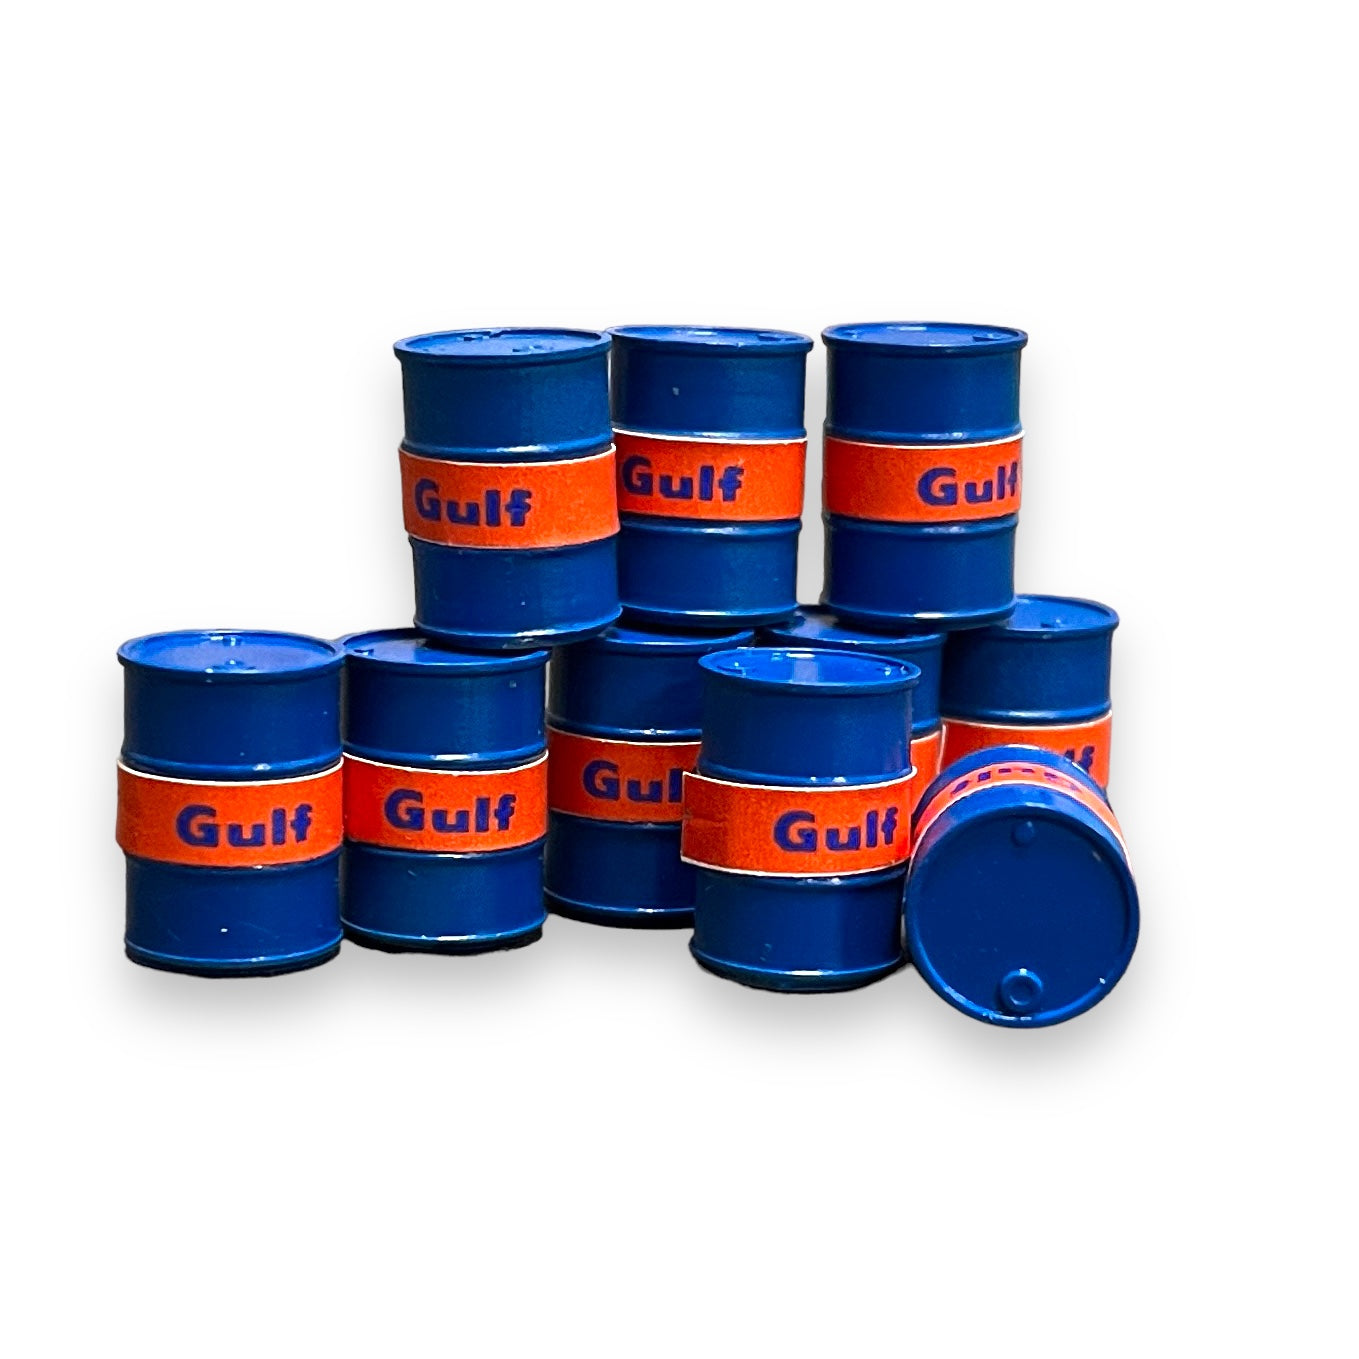 Gulf Oil Drums - OO Gauge